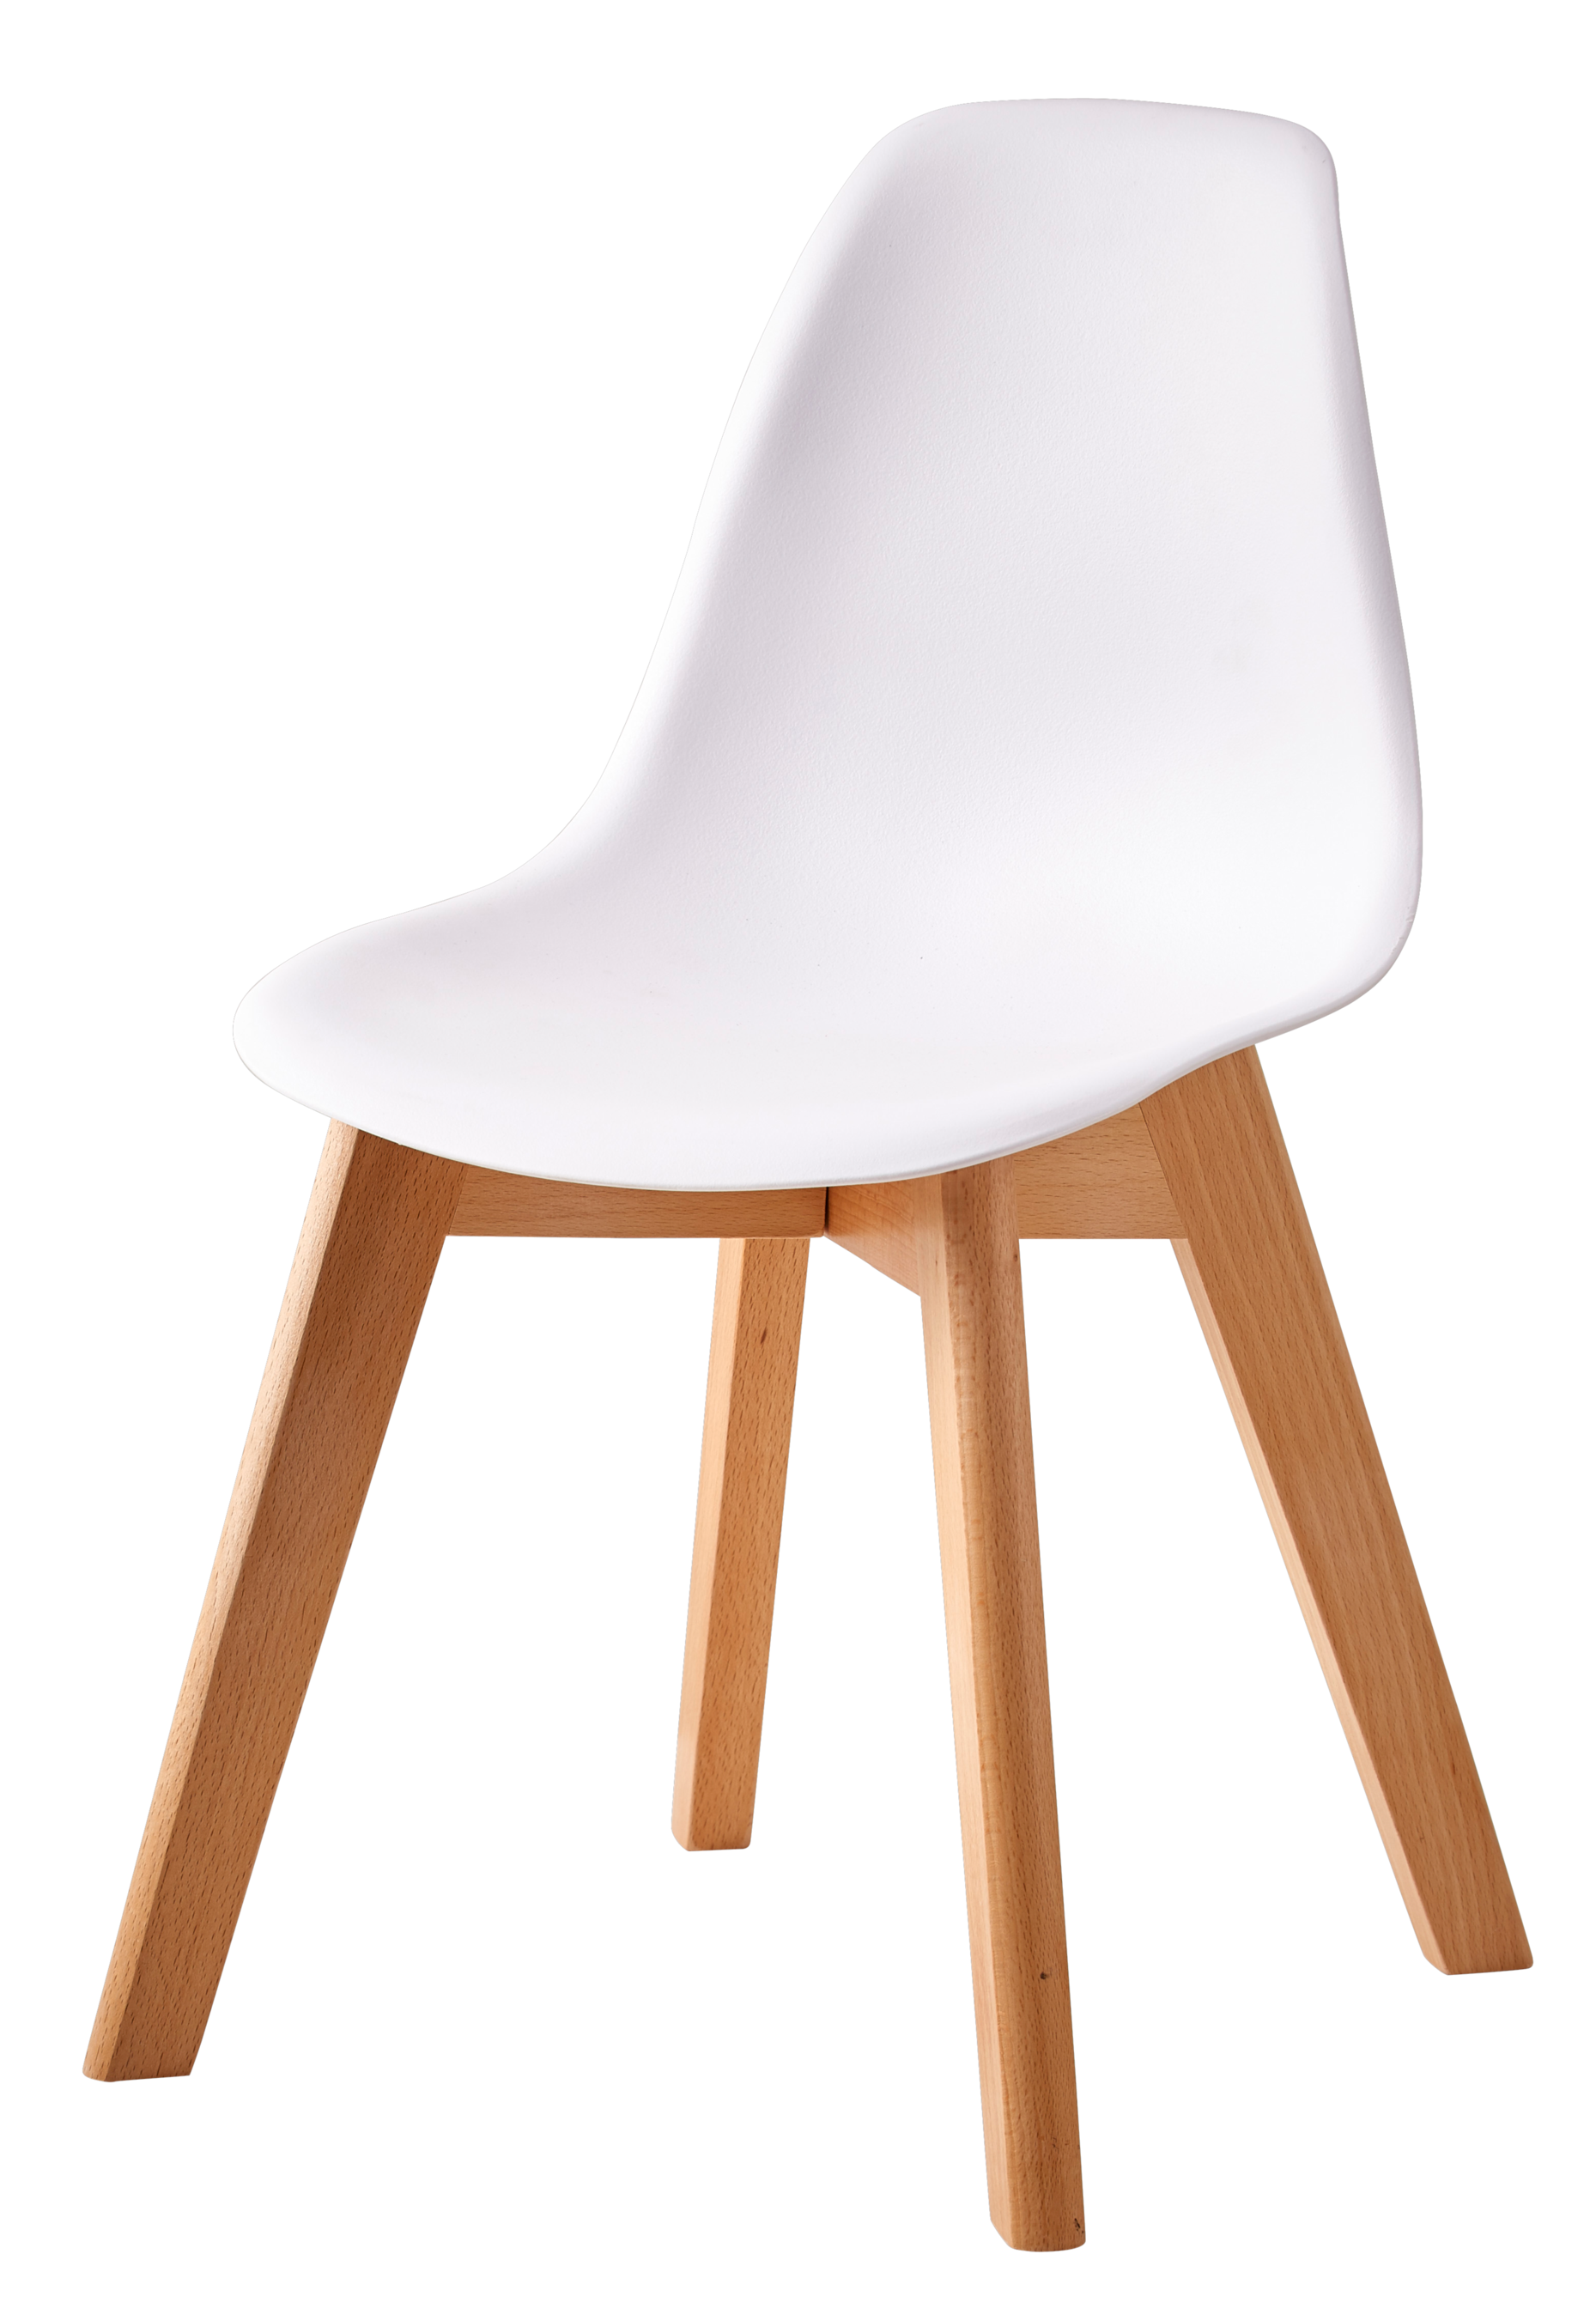 Aanbieding van MATHIAS Kinderstoel wit, naturel voor 39,95€ bij Casa